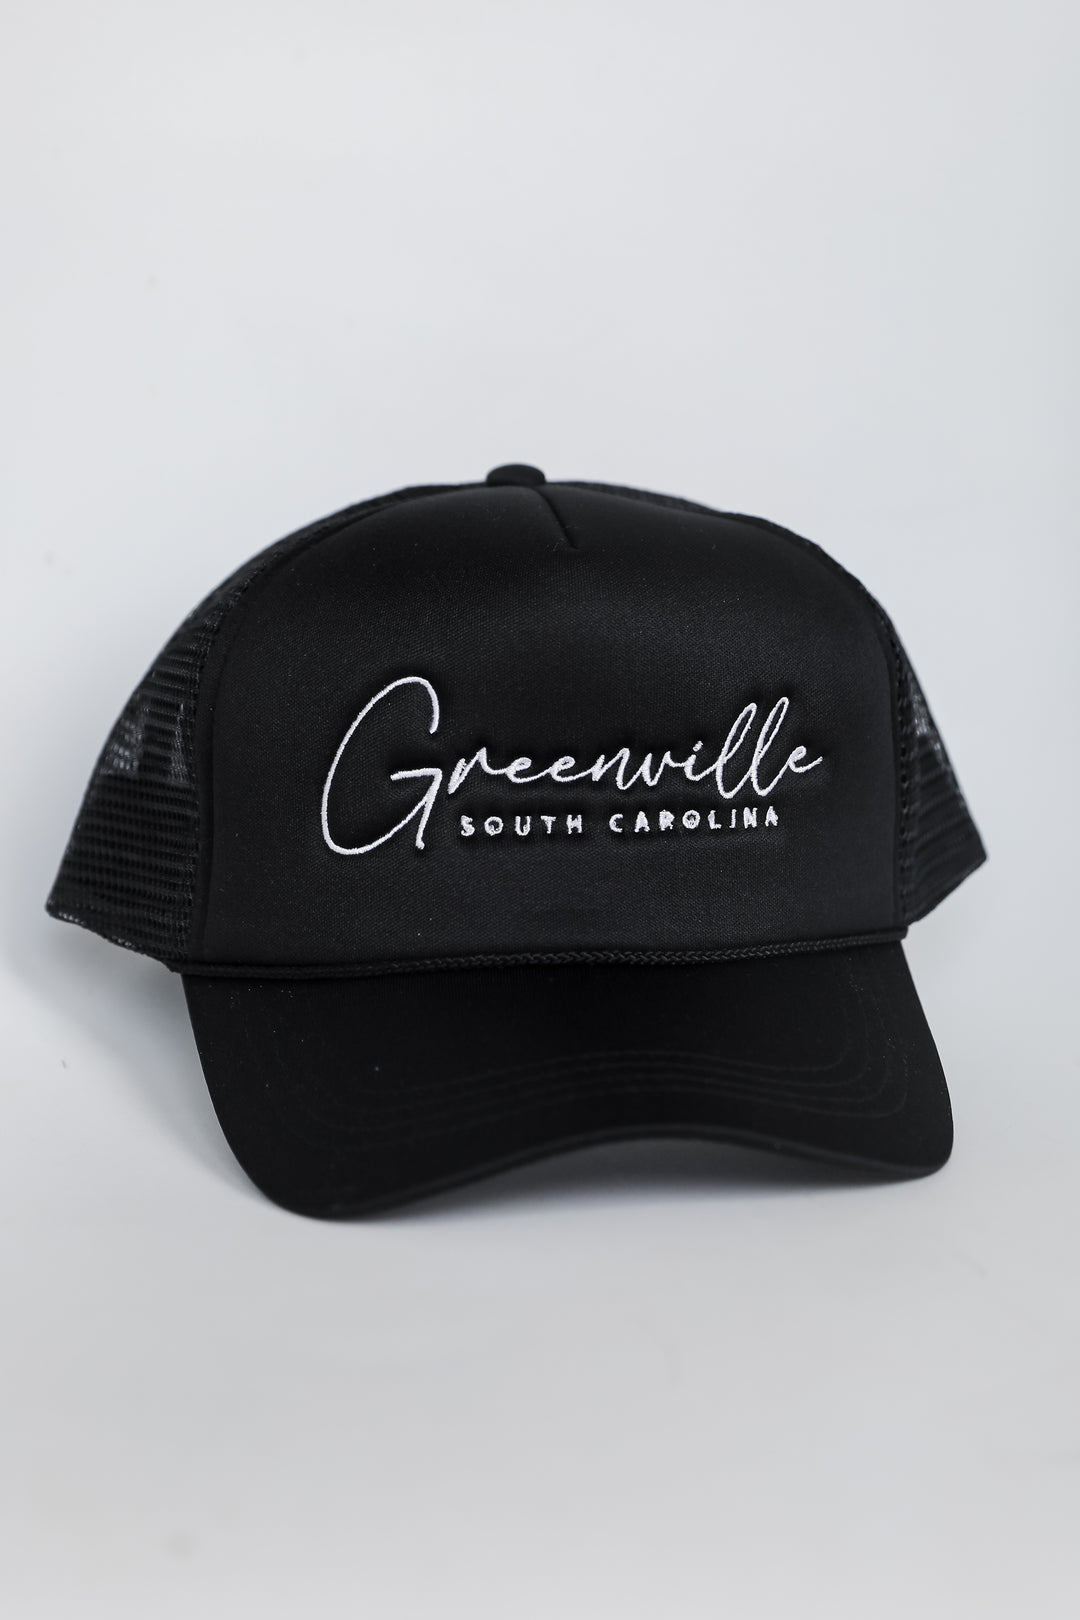 Greenville South Carolina Trucker Hat